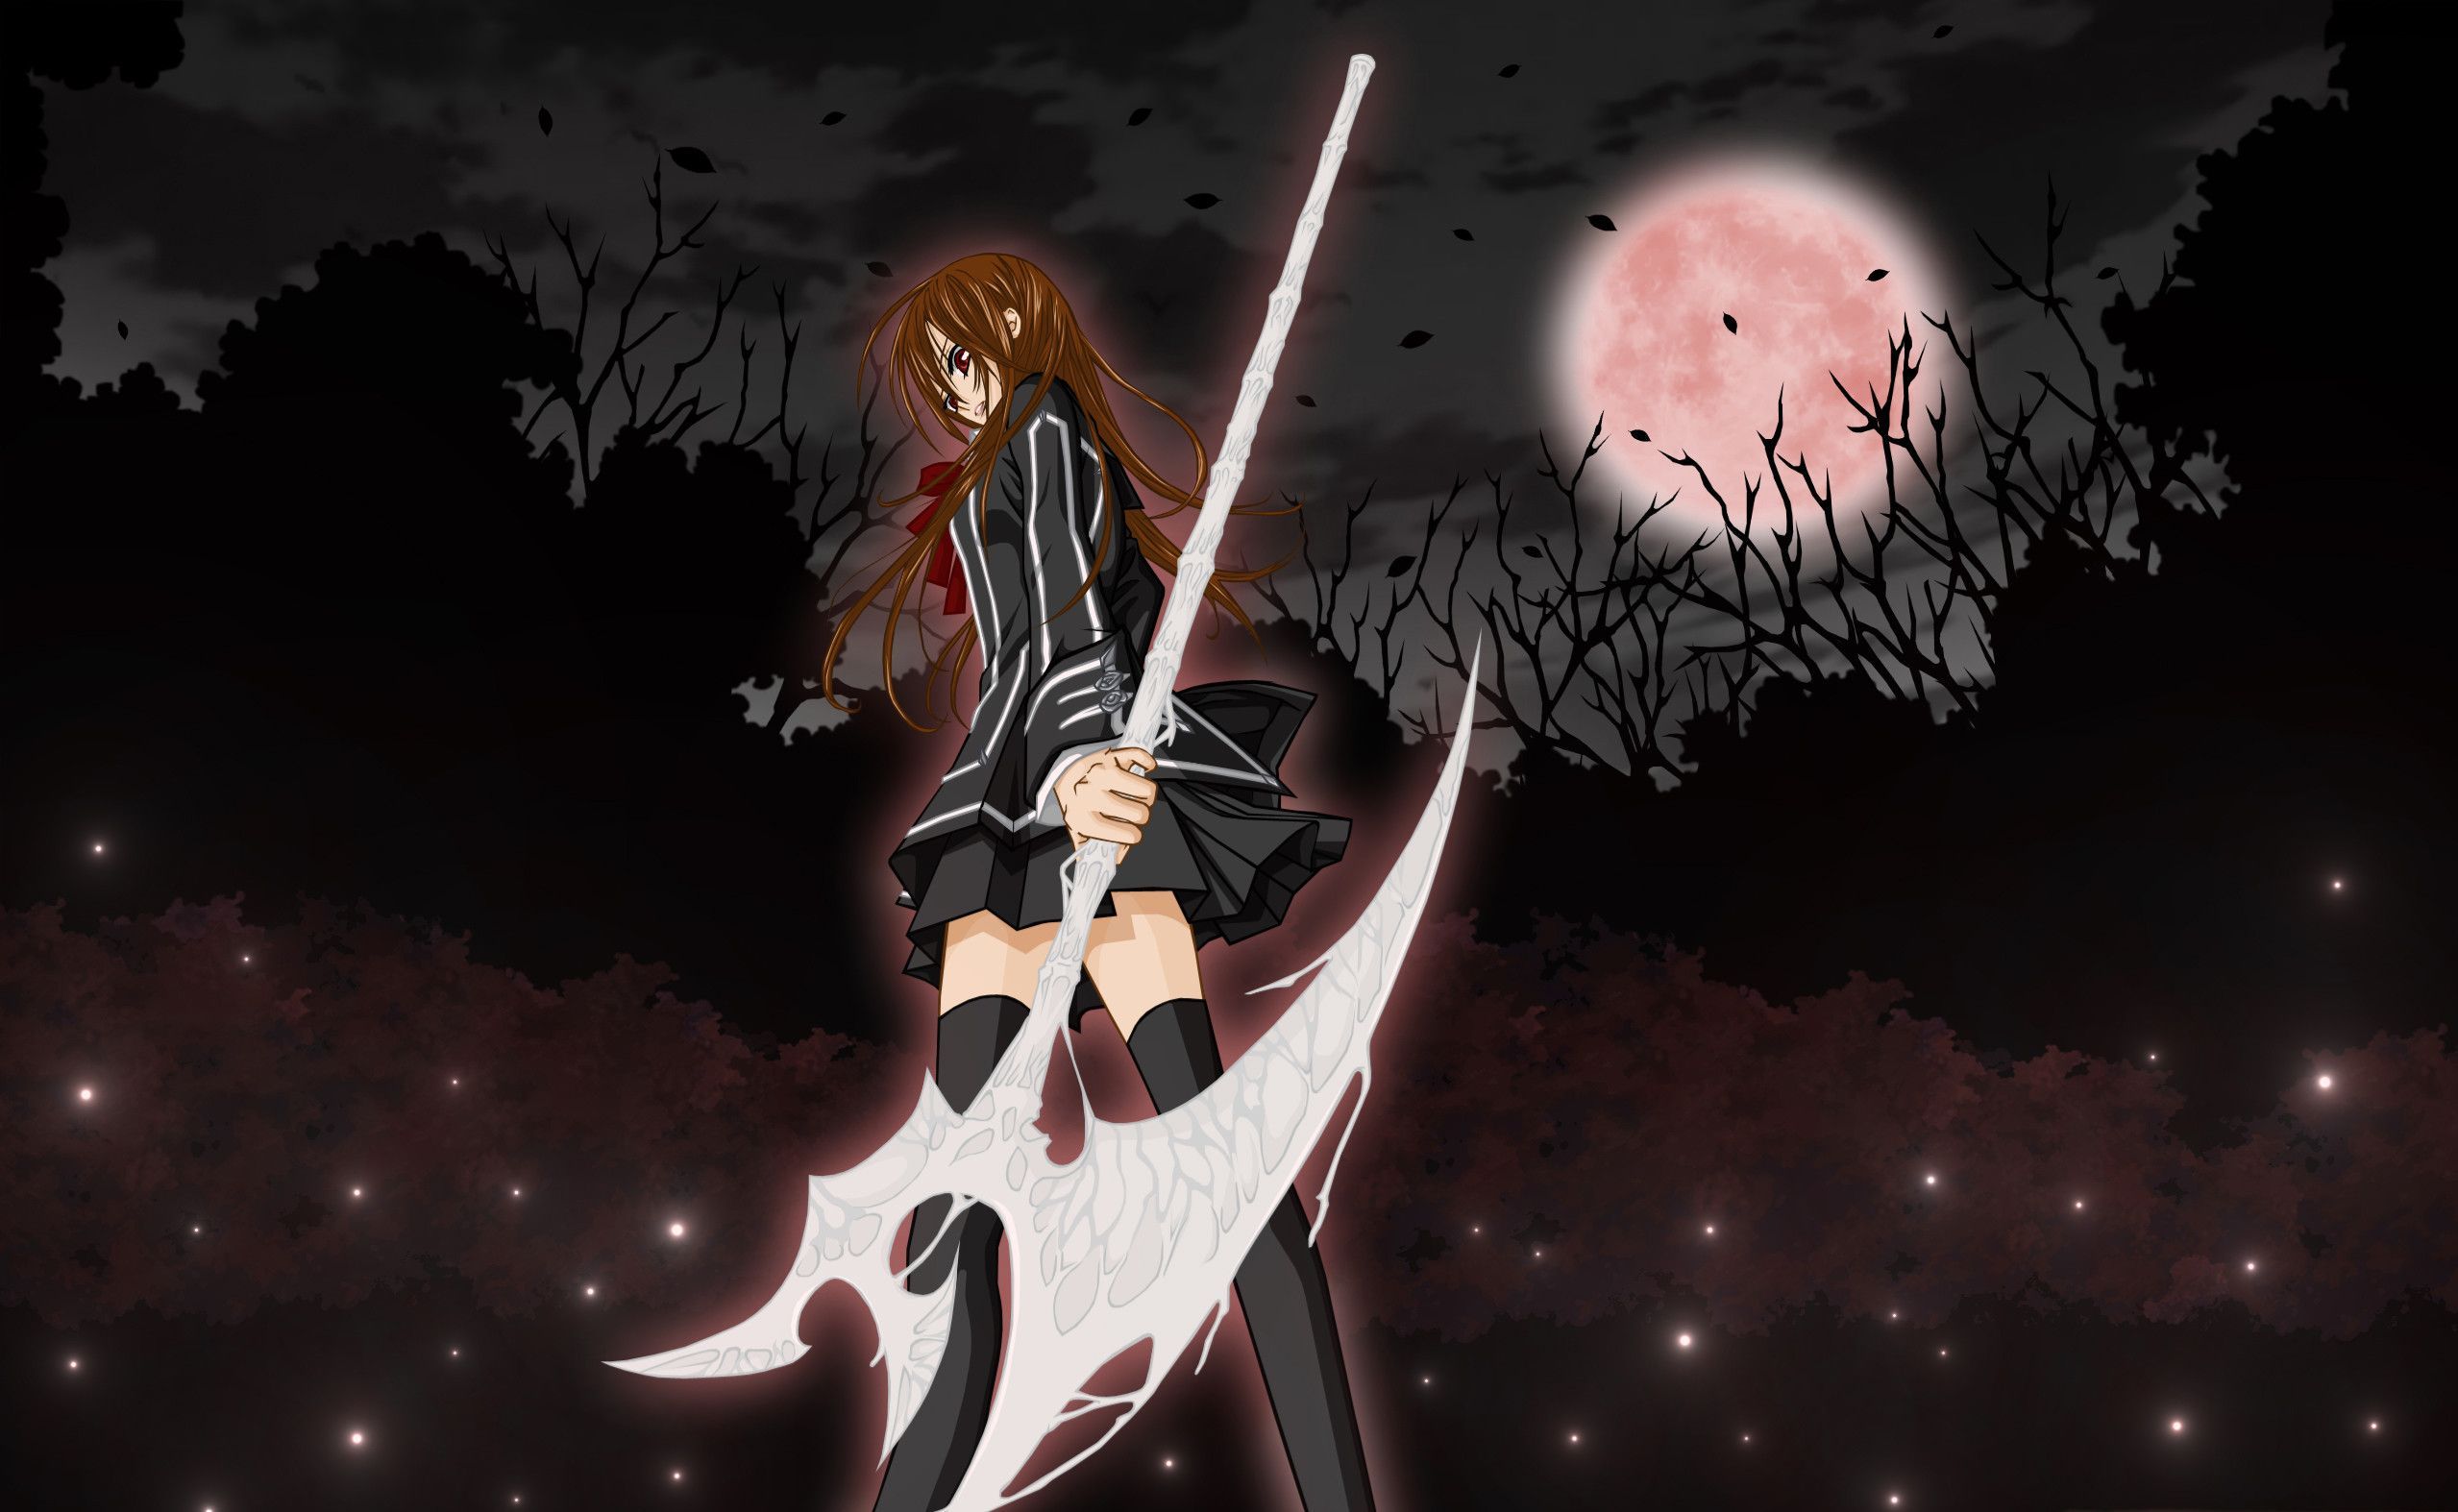 Anime Vampire Wallpaper Free Anime Vampire Background